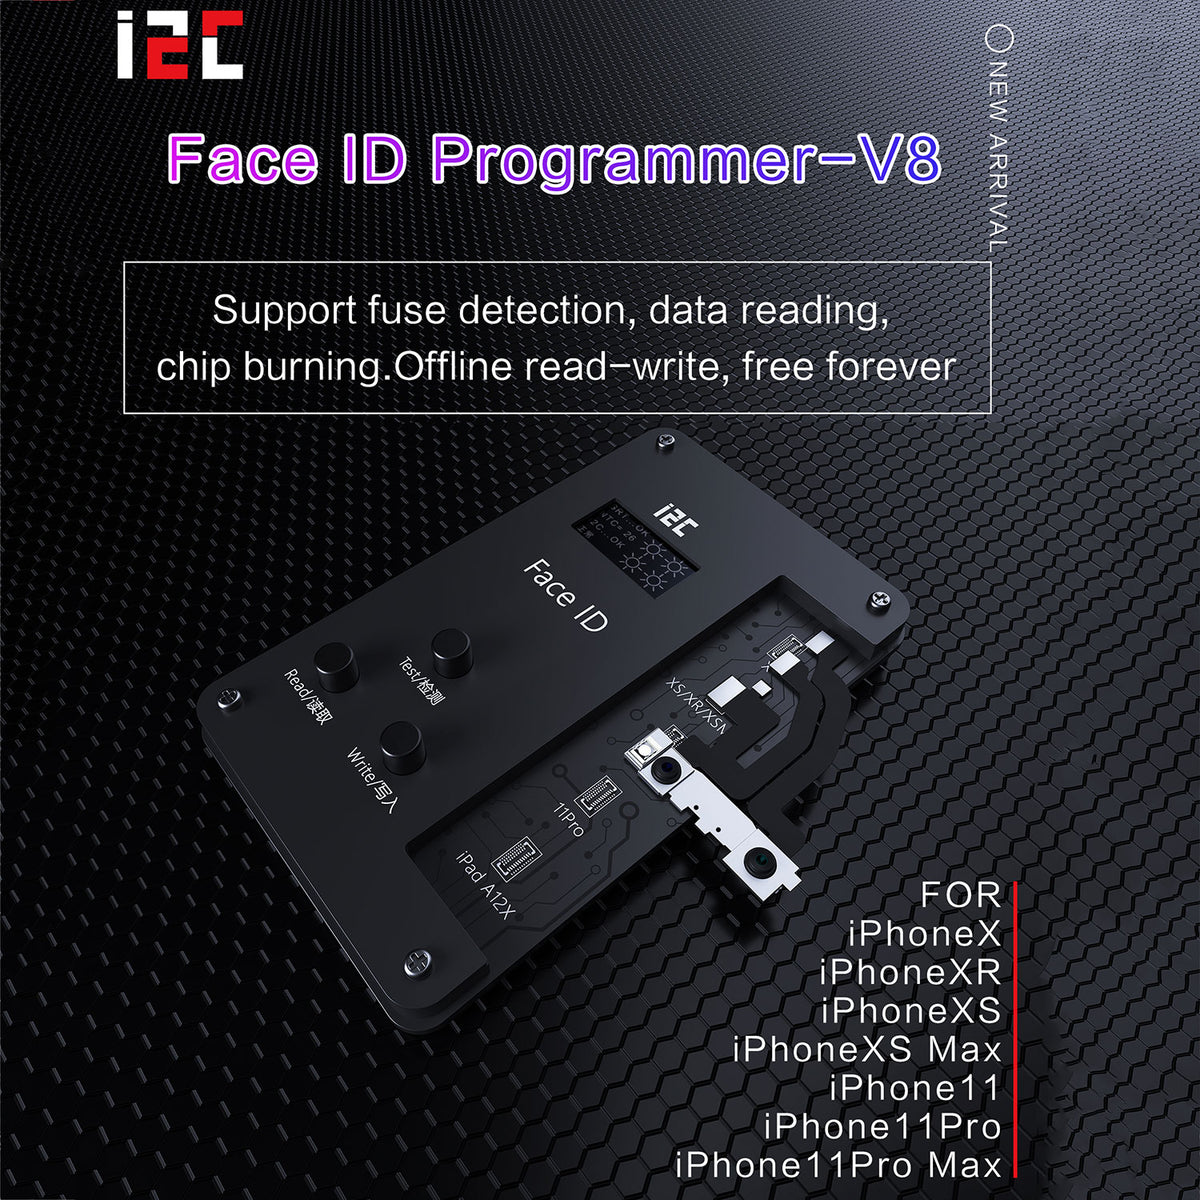 I2C FACE ID V8 PROGRAMMER FIXTURE FOR IPHONE X/XS/XSMAX/XR/11/11PRO/11PROMAX/12/12PRO/12MINI/12PROMAX